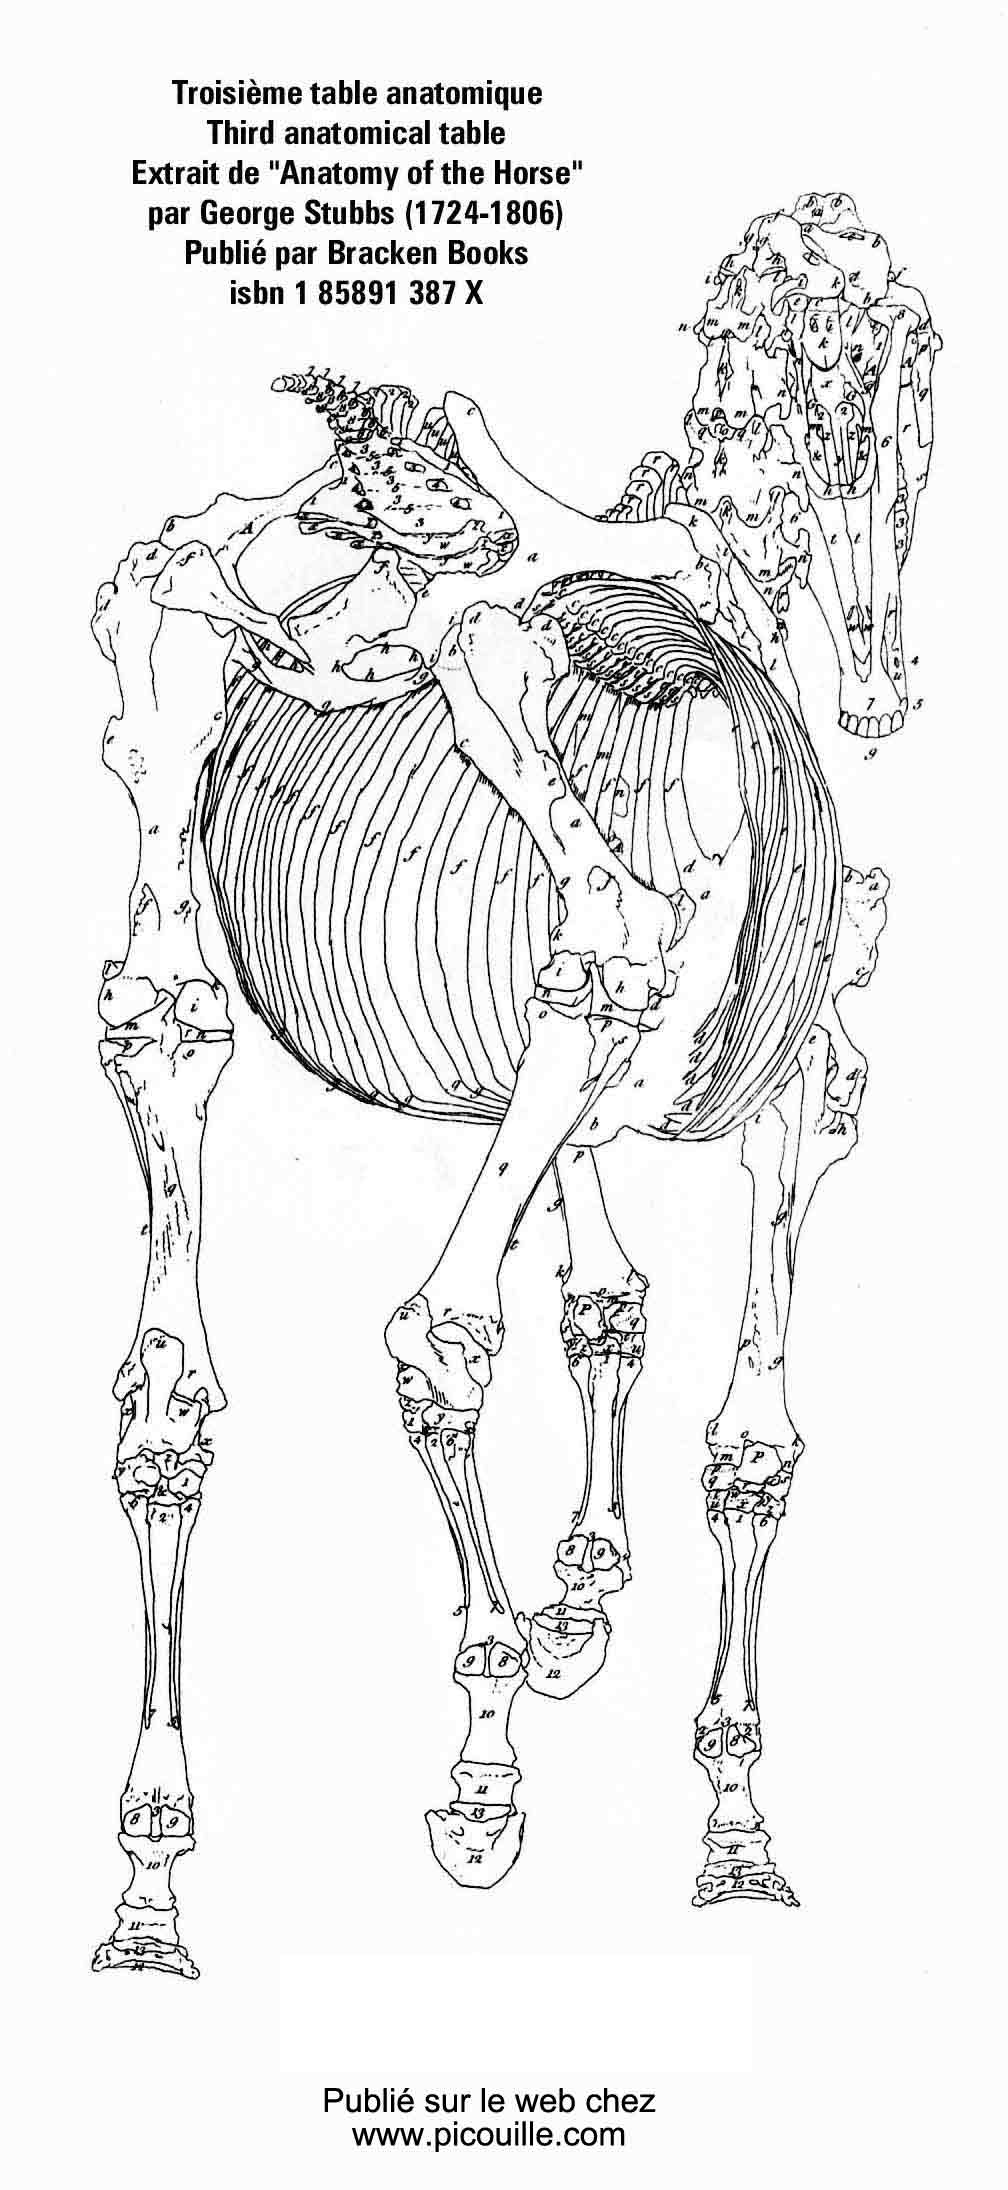 Version géante de la troisième table anatomique de Geroge Stubbs.